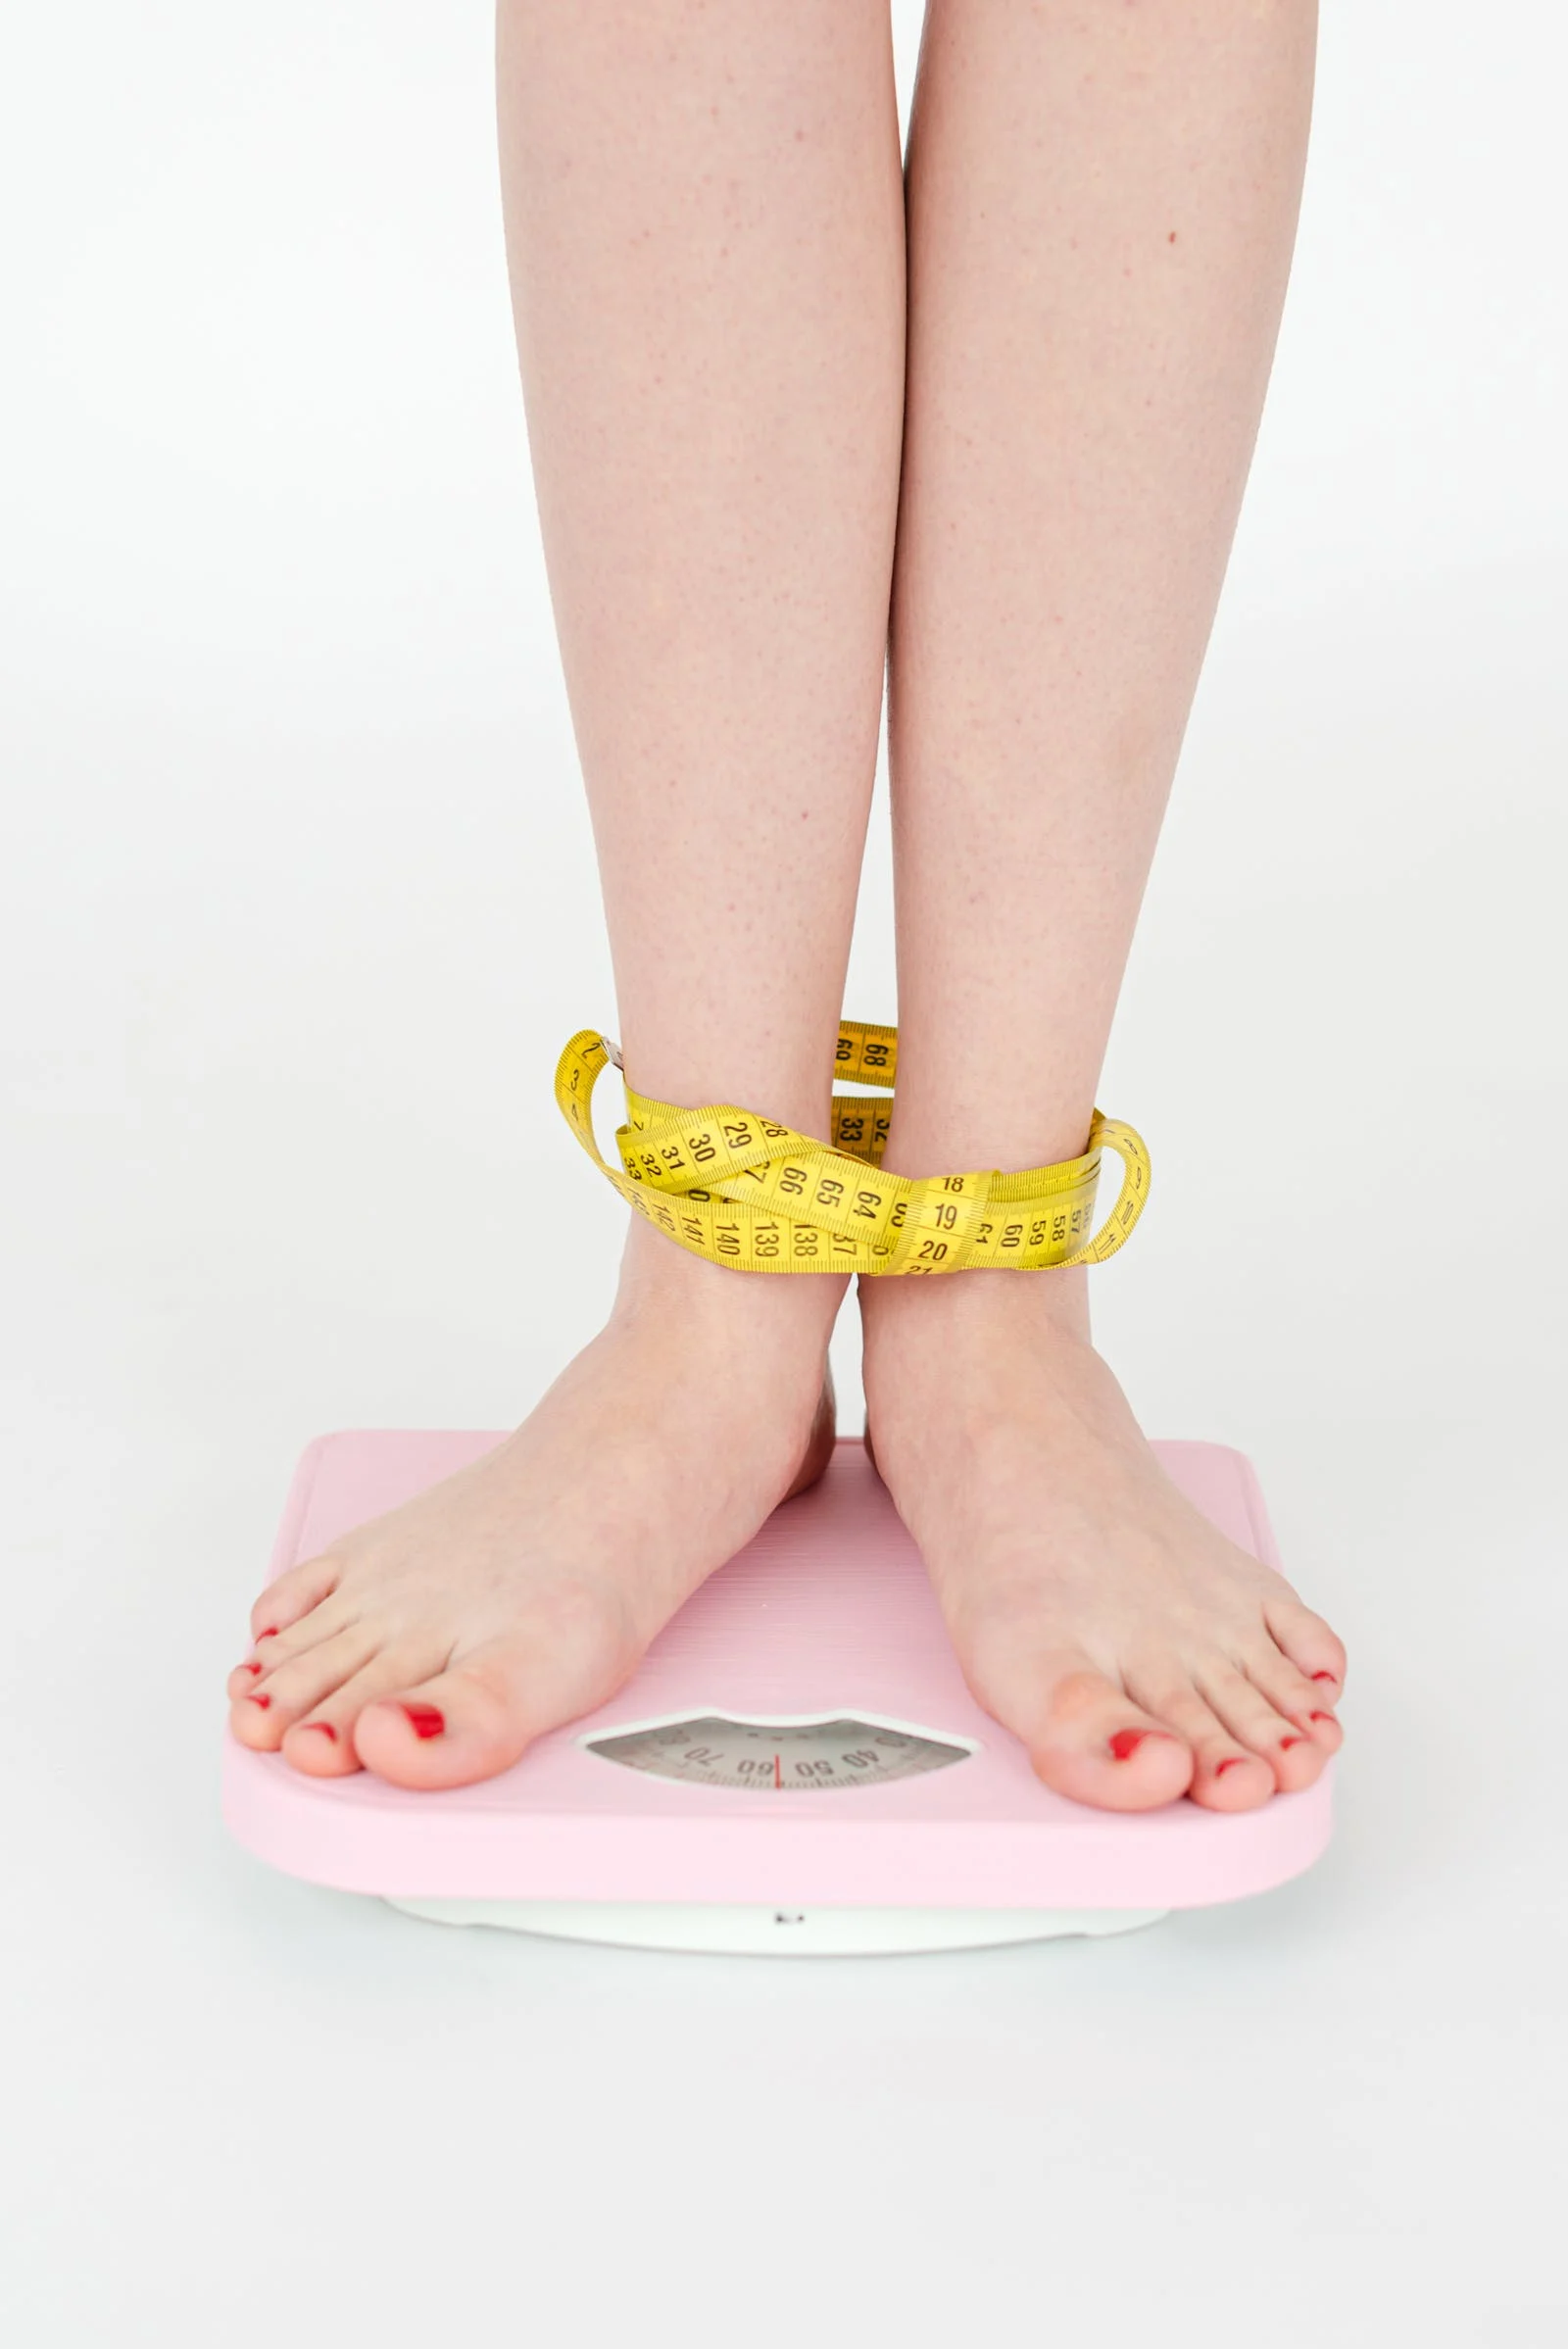 dieet anti-dieet weegschaal obsessie eetbui cravings afvallen